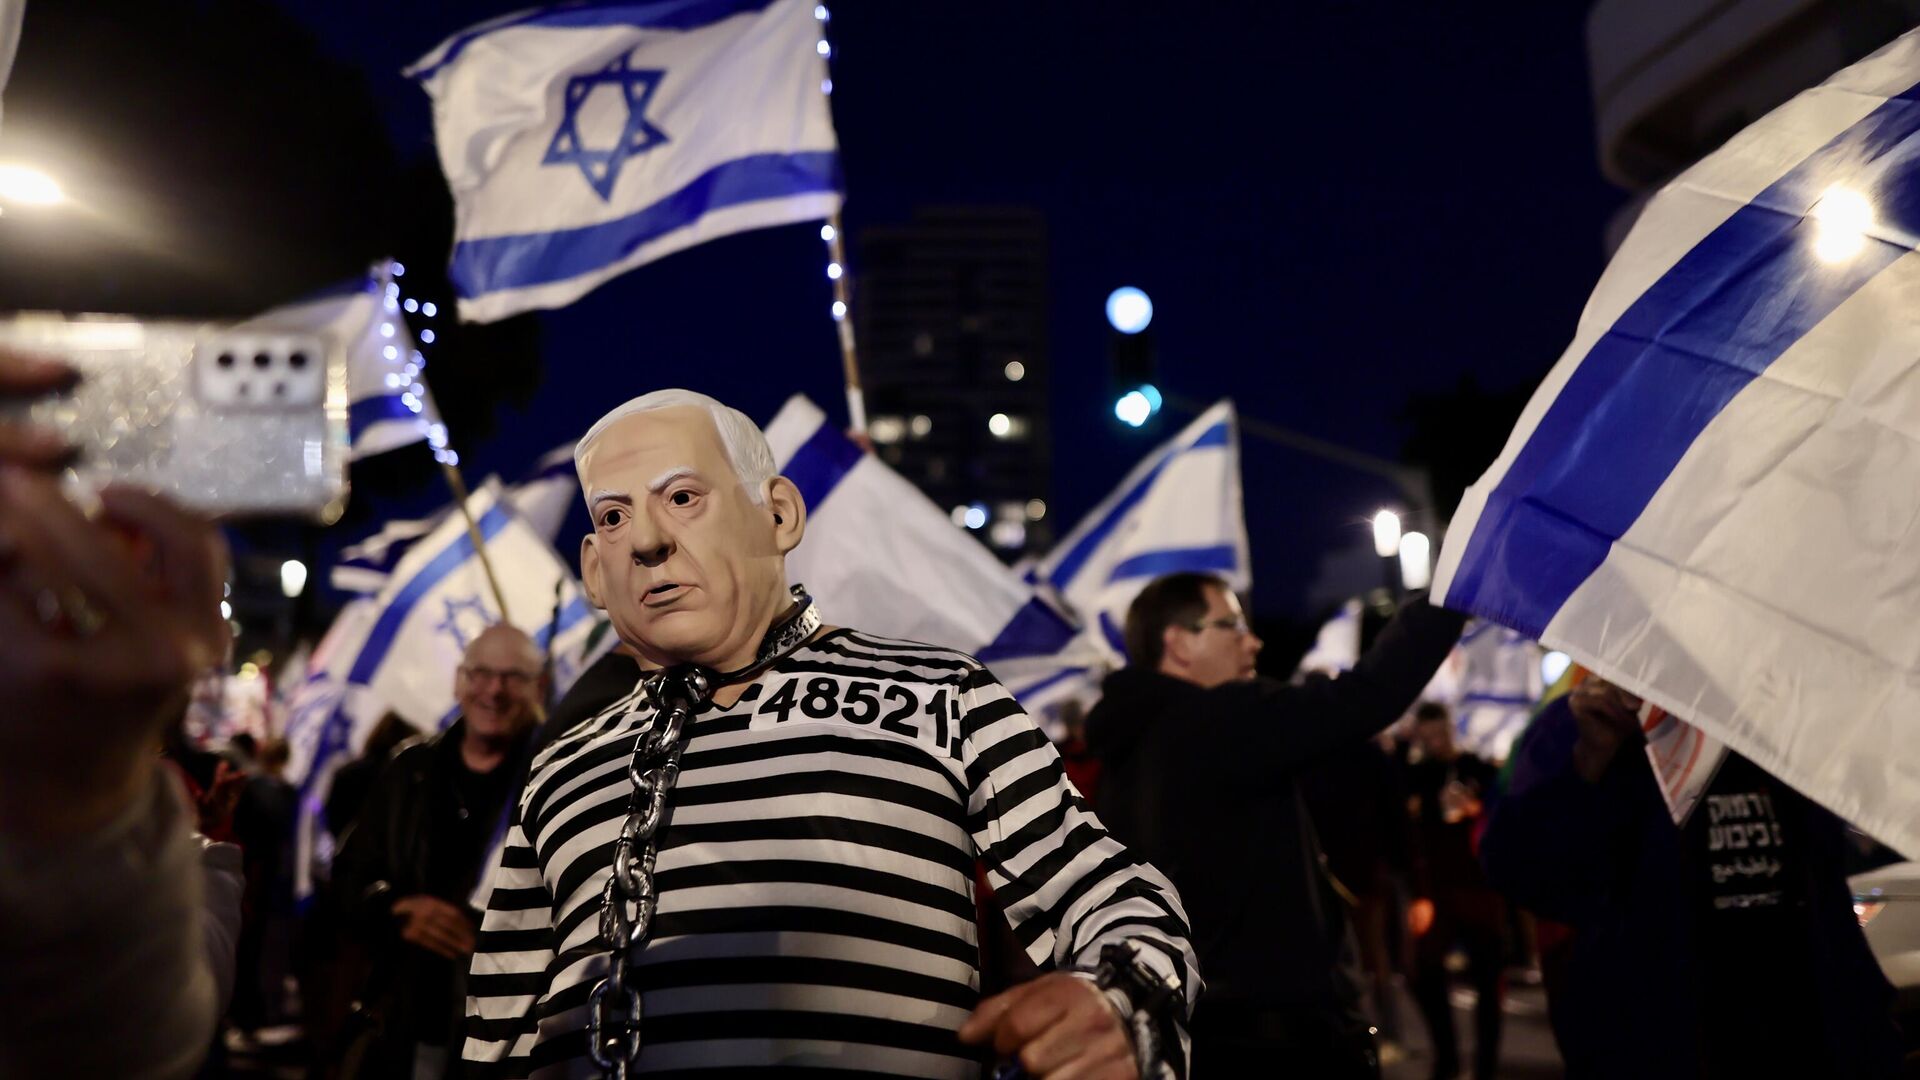 Netanyahu hükümetinin politikalarına karşı kitlesel gösteriler devam ediyor